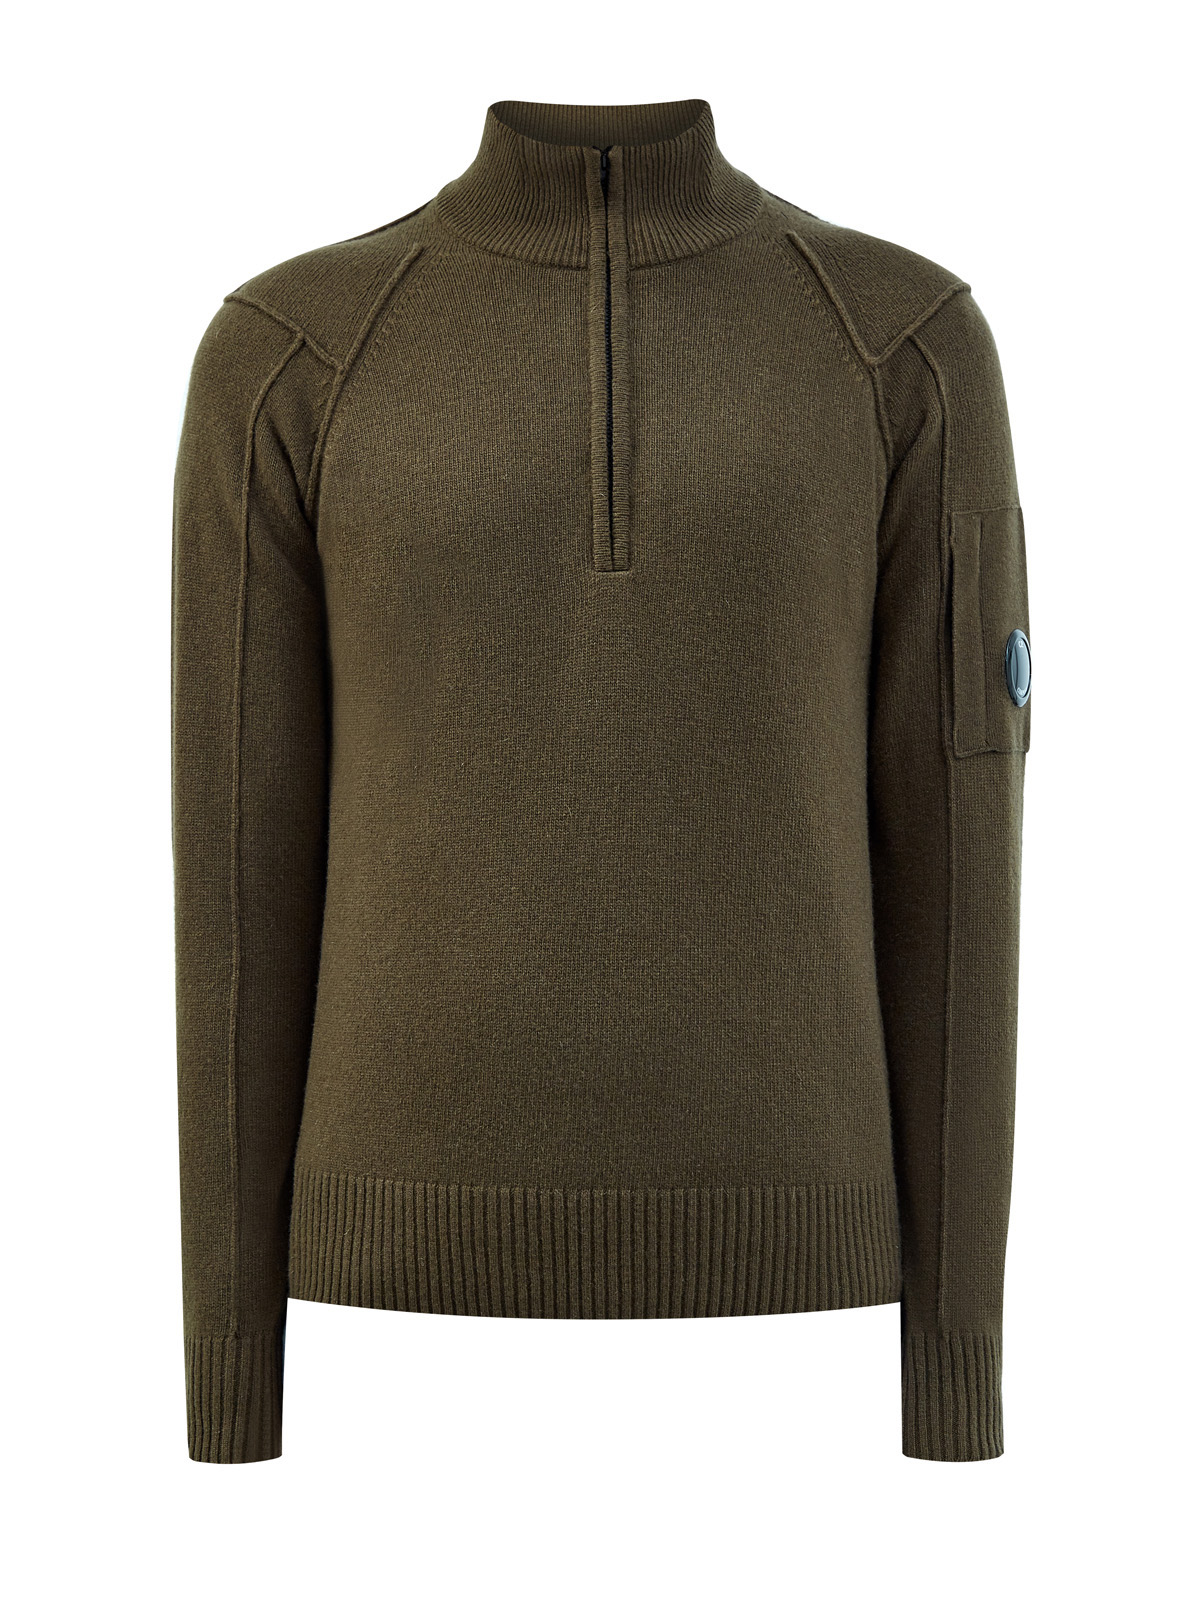 Шерстяной свитер с фактурными швами и застежкой на молнию C.P.COMPANY, цвет зеленый, размер L;XL;2XL;M - фото 1